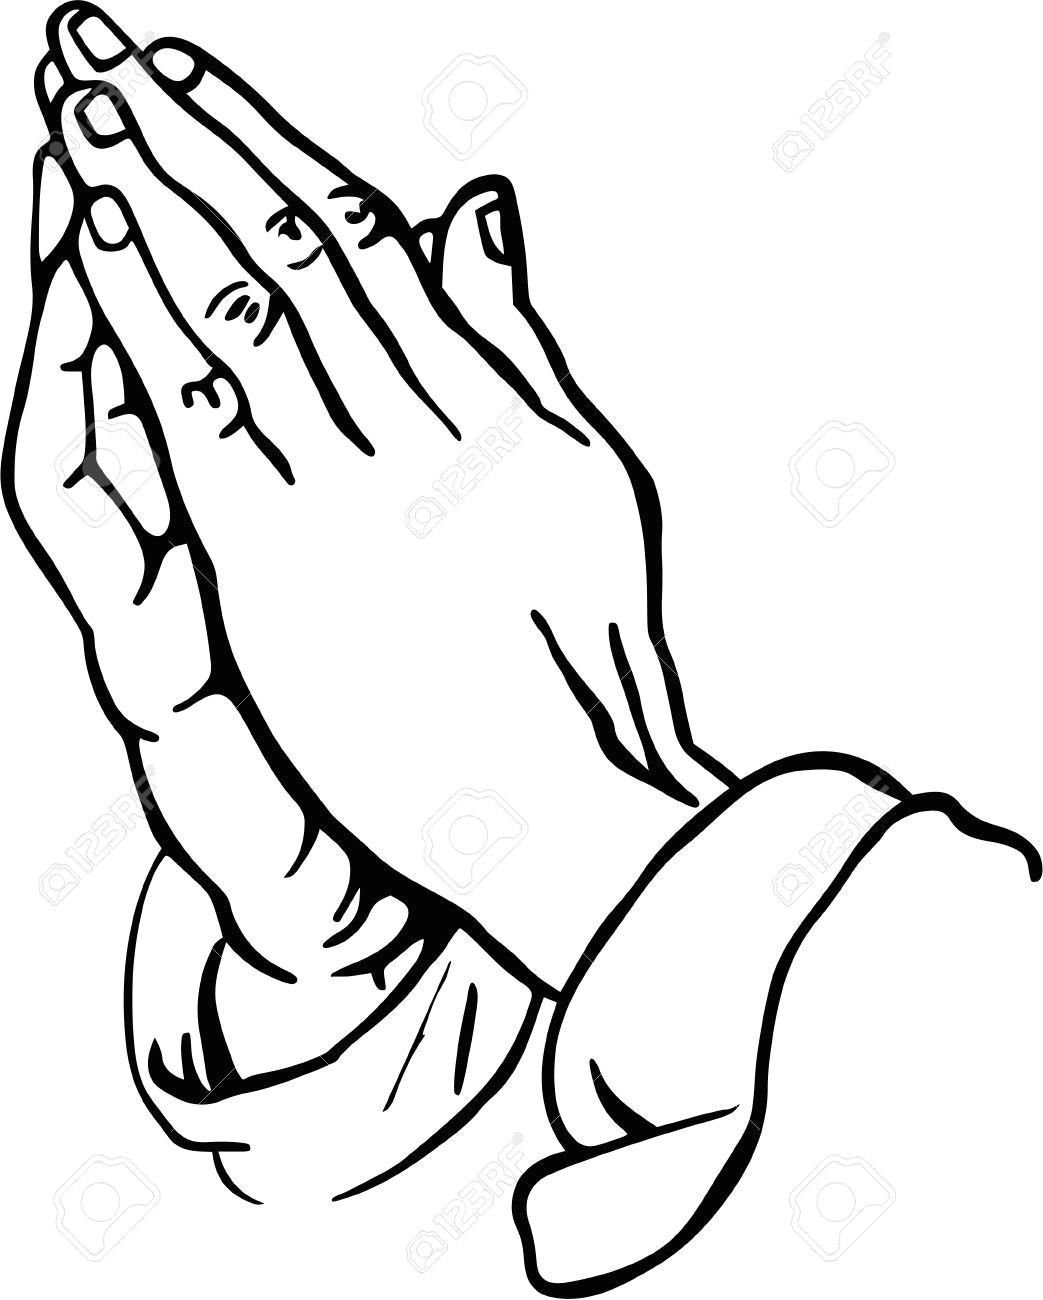 Drawing W Hand Praying Hands Clipart Craft Ideas Pinterest Praying Hands